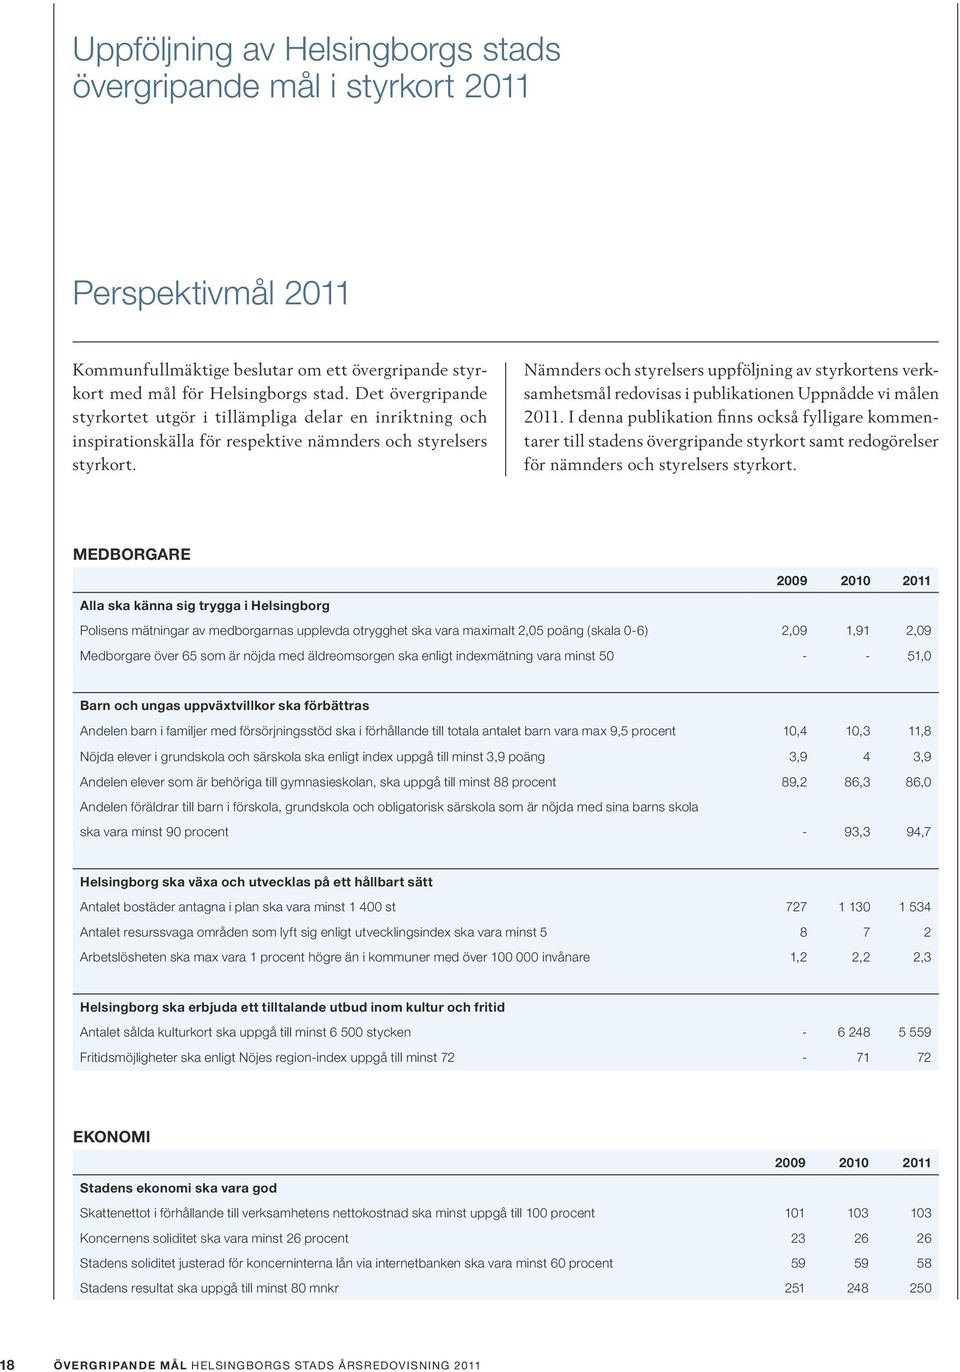 Nämnders och styrelsers uppföljning av styrkortens verksamhetsmål redovisas i publikationen Uppnådde vi målen 2011.